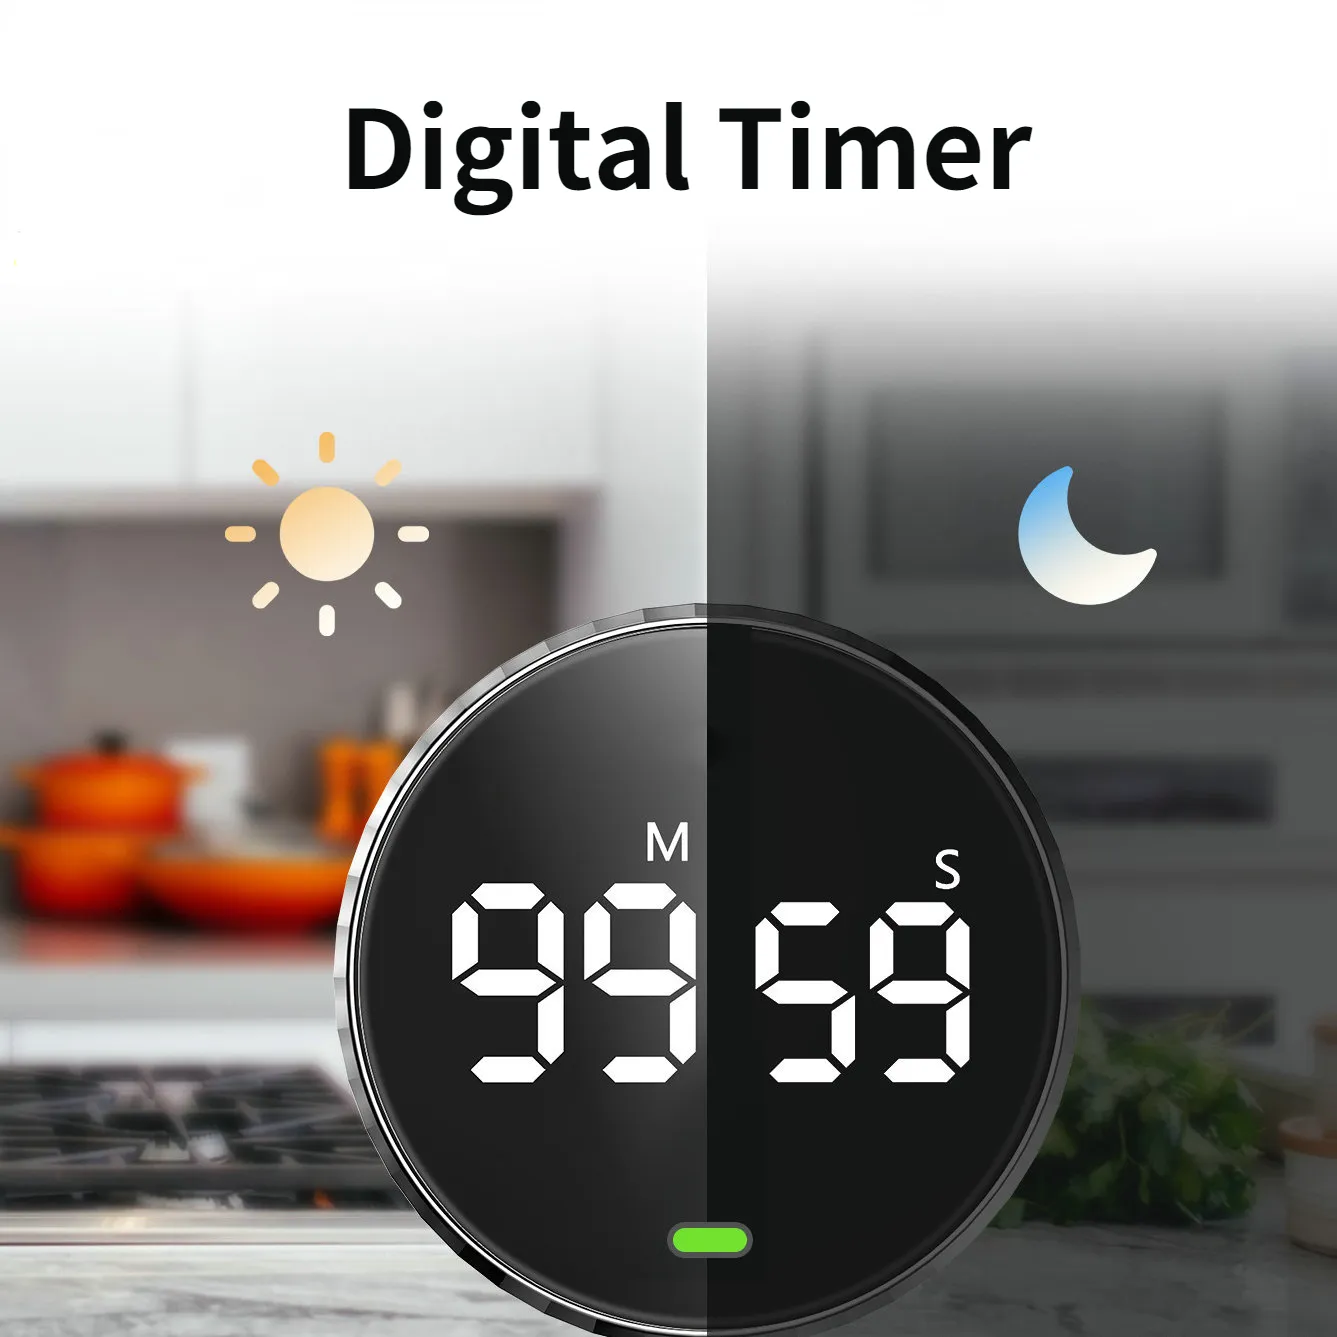 Küchentimer Smart Digital Timer Magnetische Saug-LED Manuelle Countdown-Wecker Mechanische Kochen Dusche Studie Stoppuhr 230721